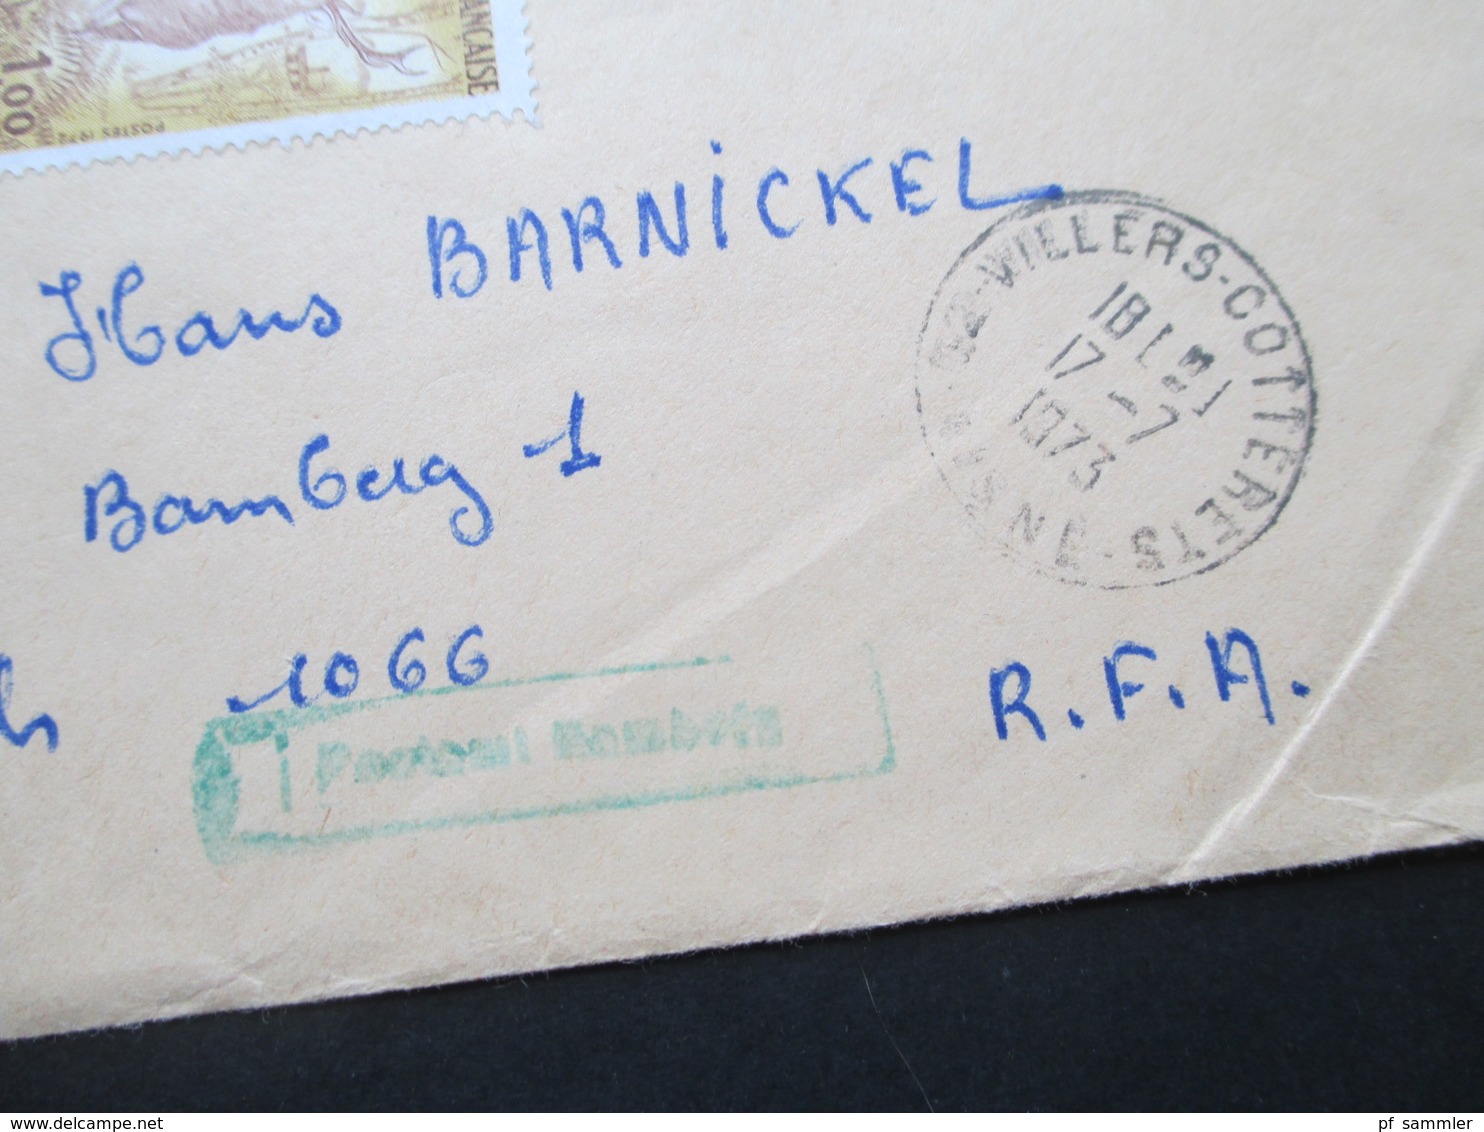 Frankreich 1973 Einschreiben / R-Brief R-Zettel Gestempelt Villers - Cotterets Mit Zollaufkleber Douane Nach Bamberg - Storia Postale